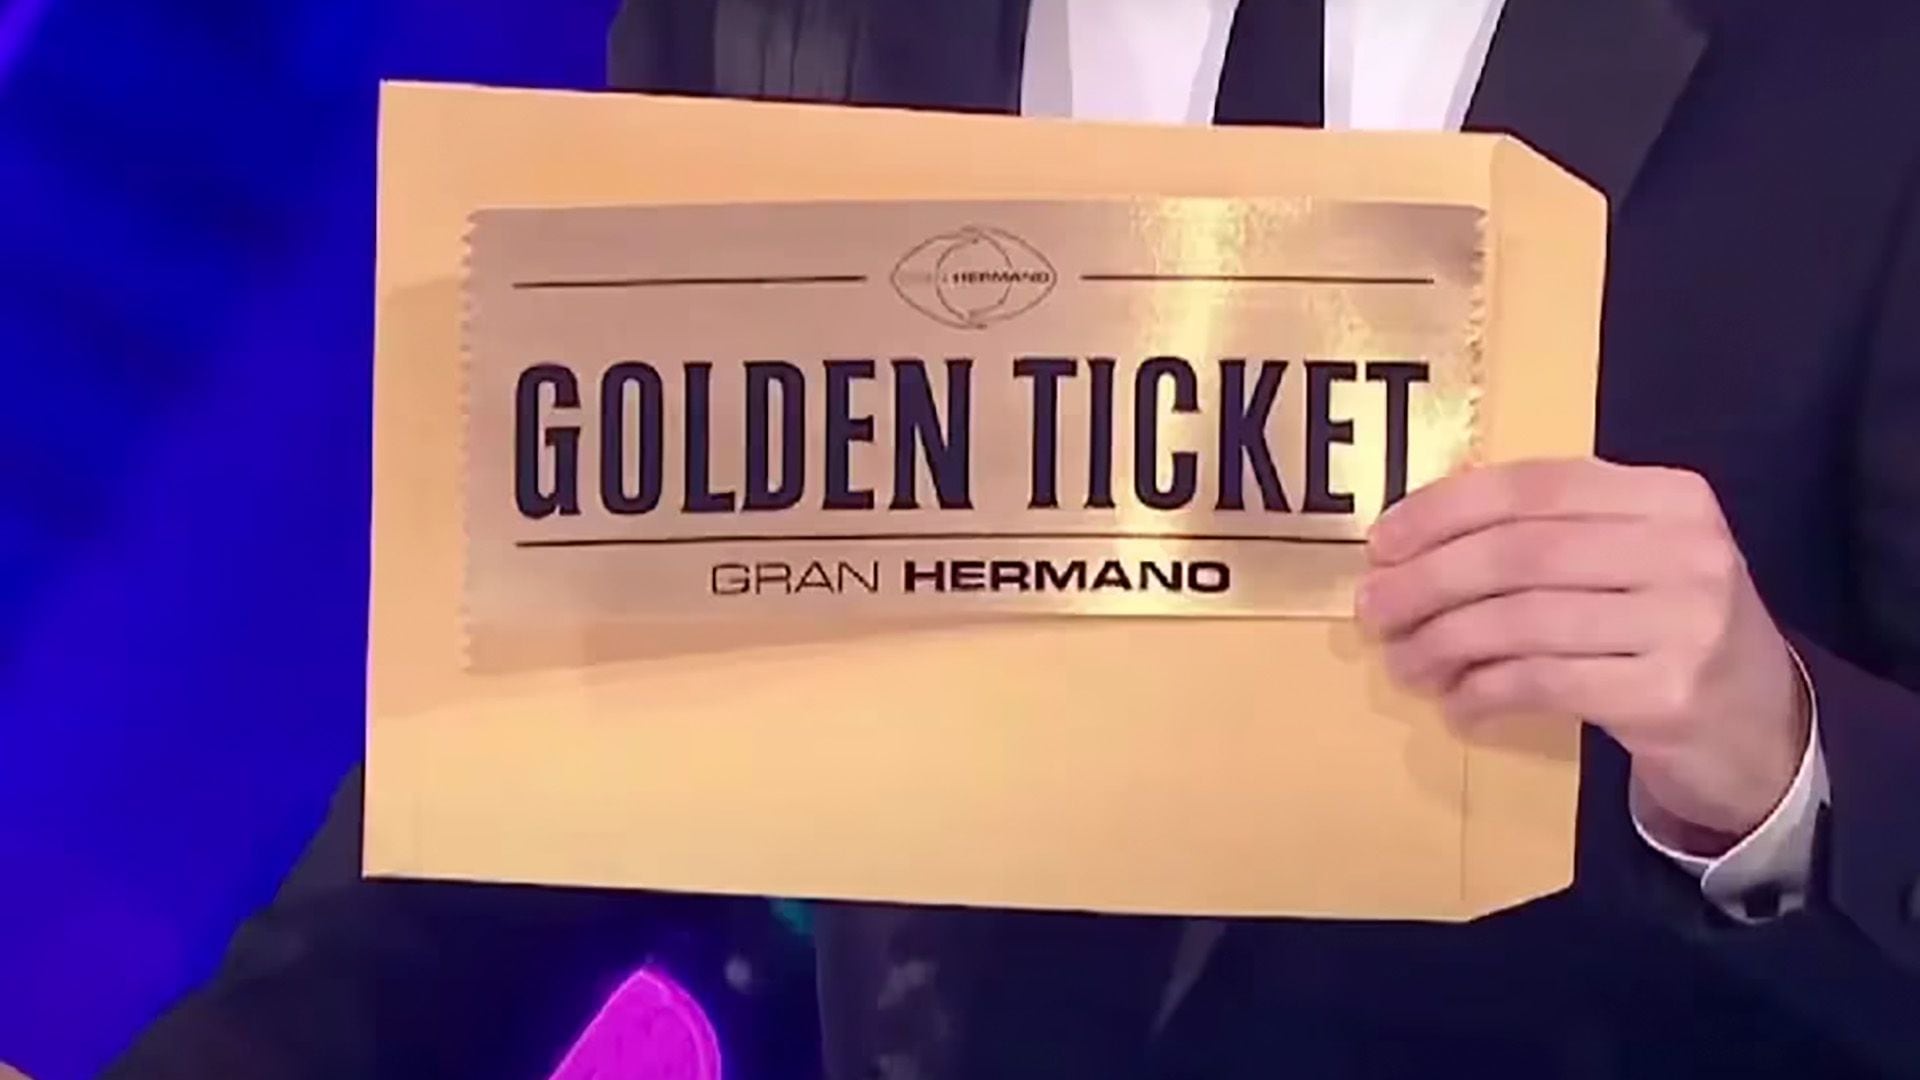 ¿Qué es el Golden Ticket, el misterio de GH que genera distintos rumores en las redes sociales?